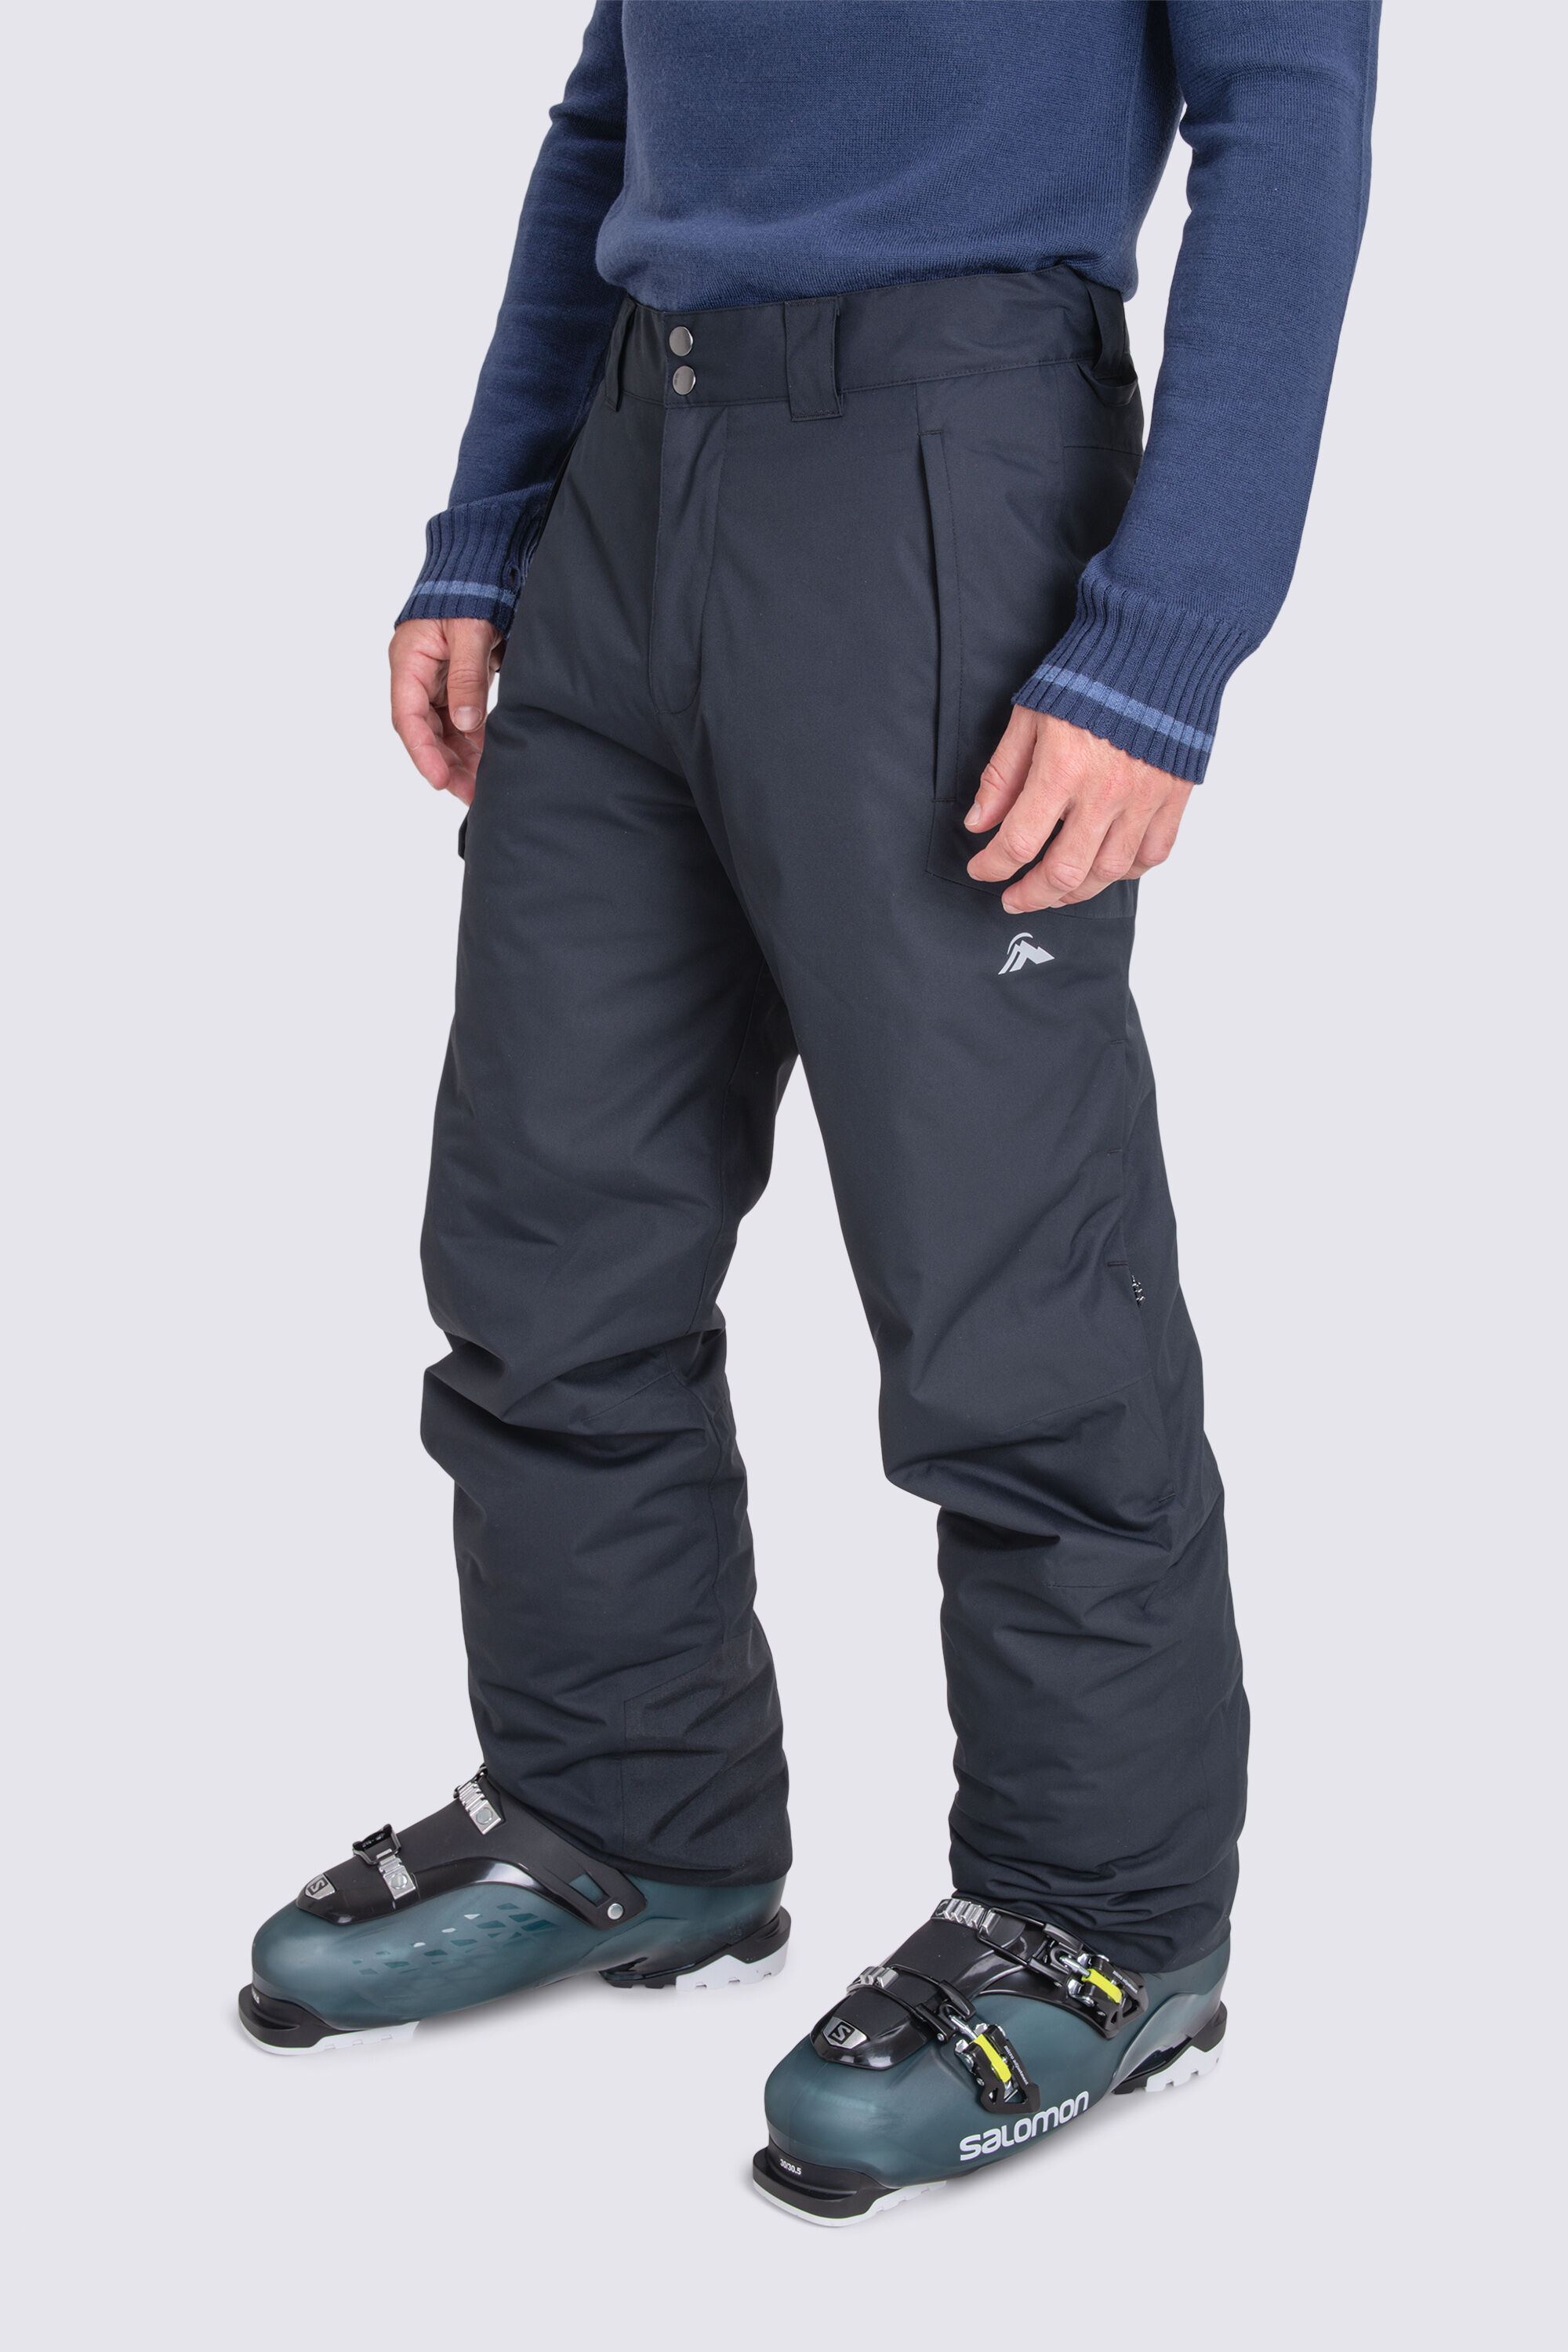 Men's Strato Ski Pants | Ski pants | Rossignol